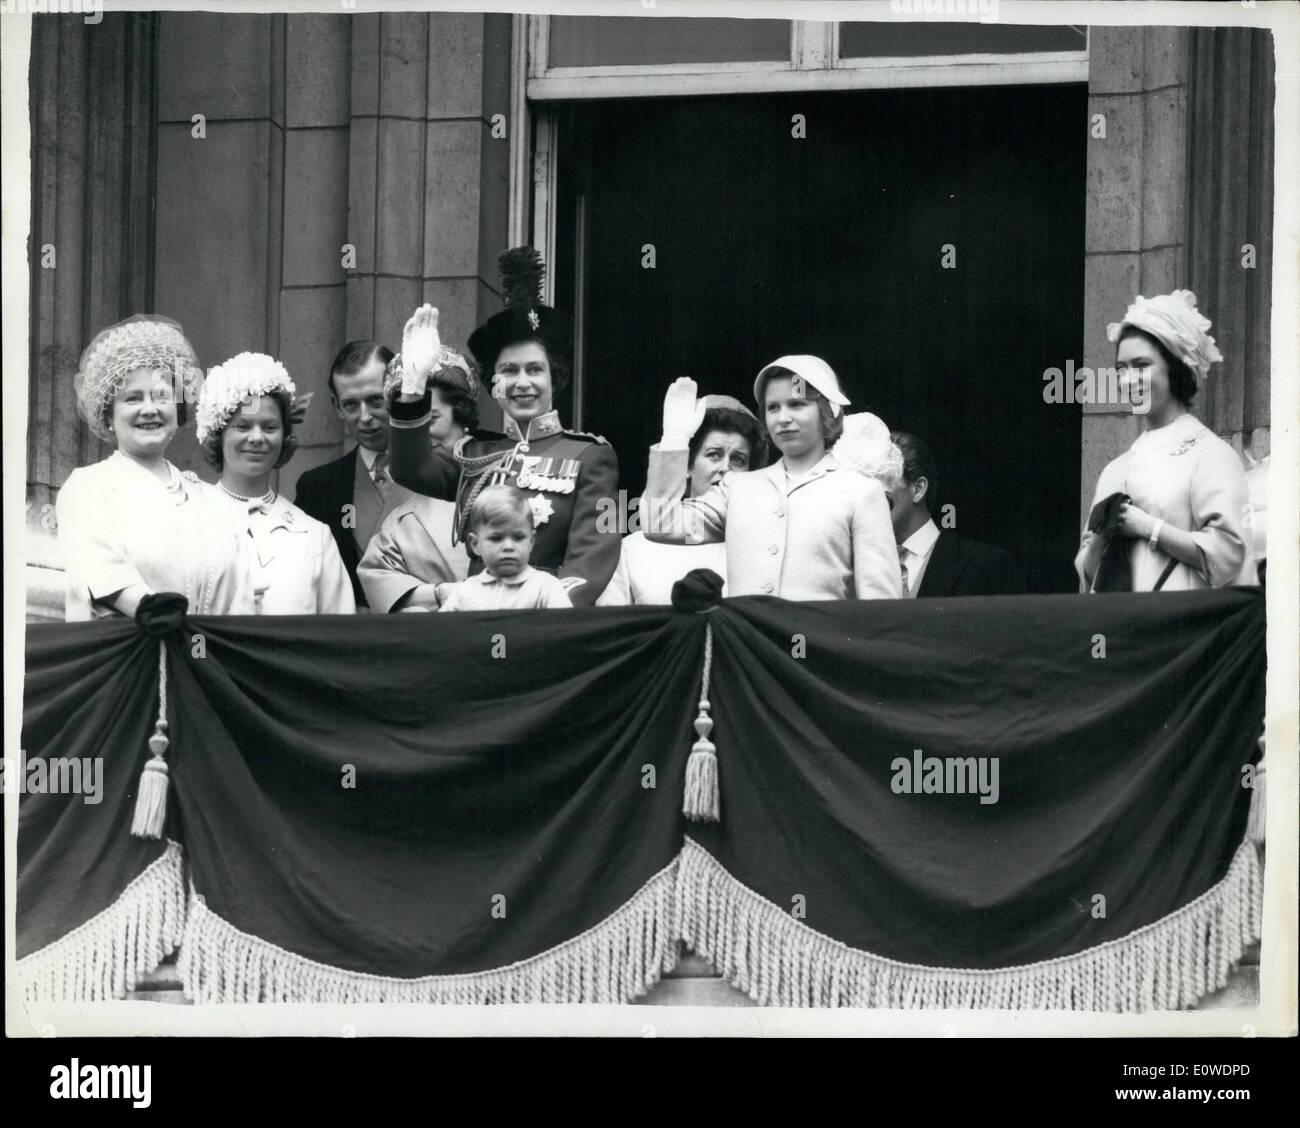 Juin 06, 1962 - Prince Andrew sur le balcon de la famille royale, y compris petits princes Andrew, au balcon du palais de Buckingham lors du survol d'avions de chasse de la RAF qui a suivi la parade la cérémonie des couleurs sur Horse Guards Parade aujourd'hui, le Queen's anniversaire officiel et 9e anniversaire de son couronnement. De gauche à droite. la reine mère, duchesse de Kent, duc de Kent, la princesse marina (caché), la reine, les princes Andrew, la princesse Alexandra, la princesse Anne et Princess Margaret Banque D'Images